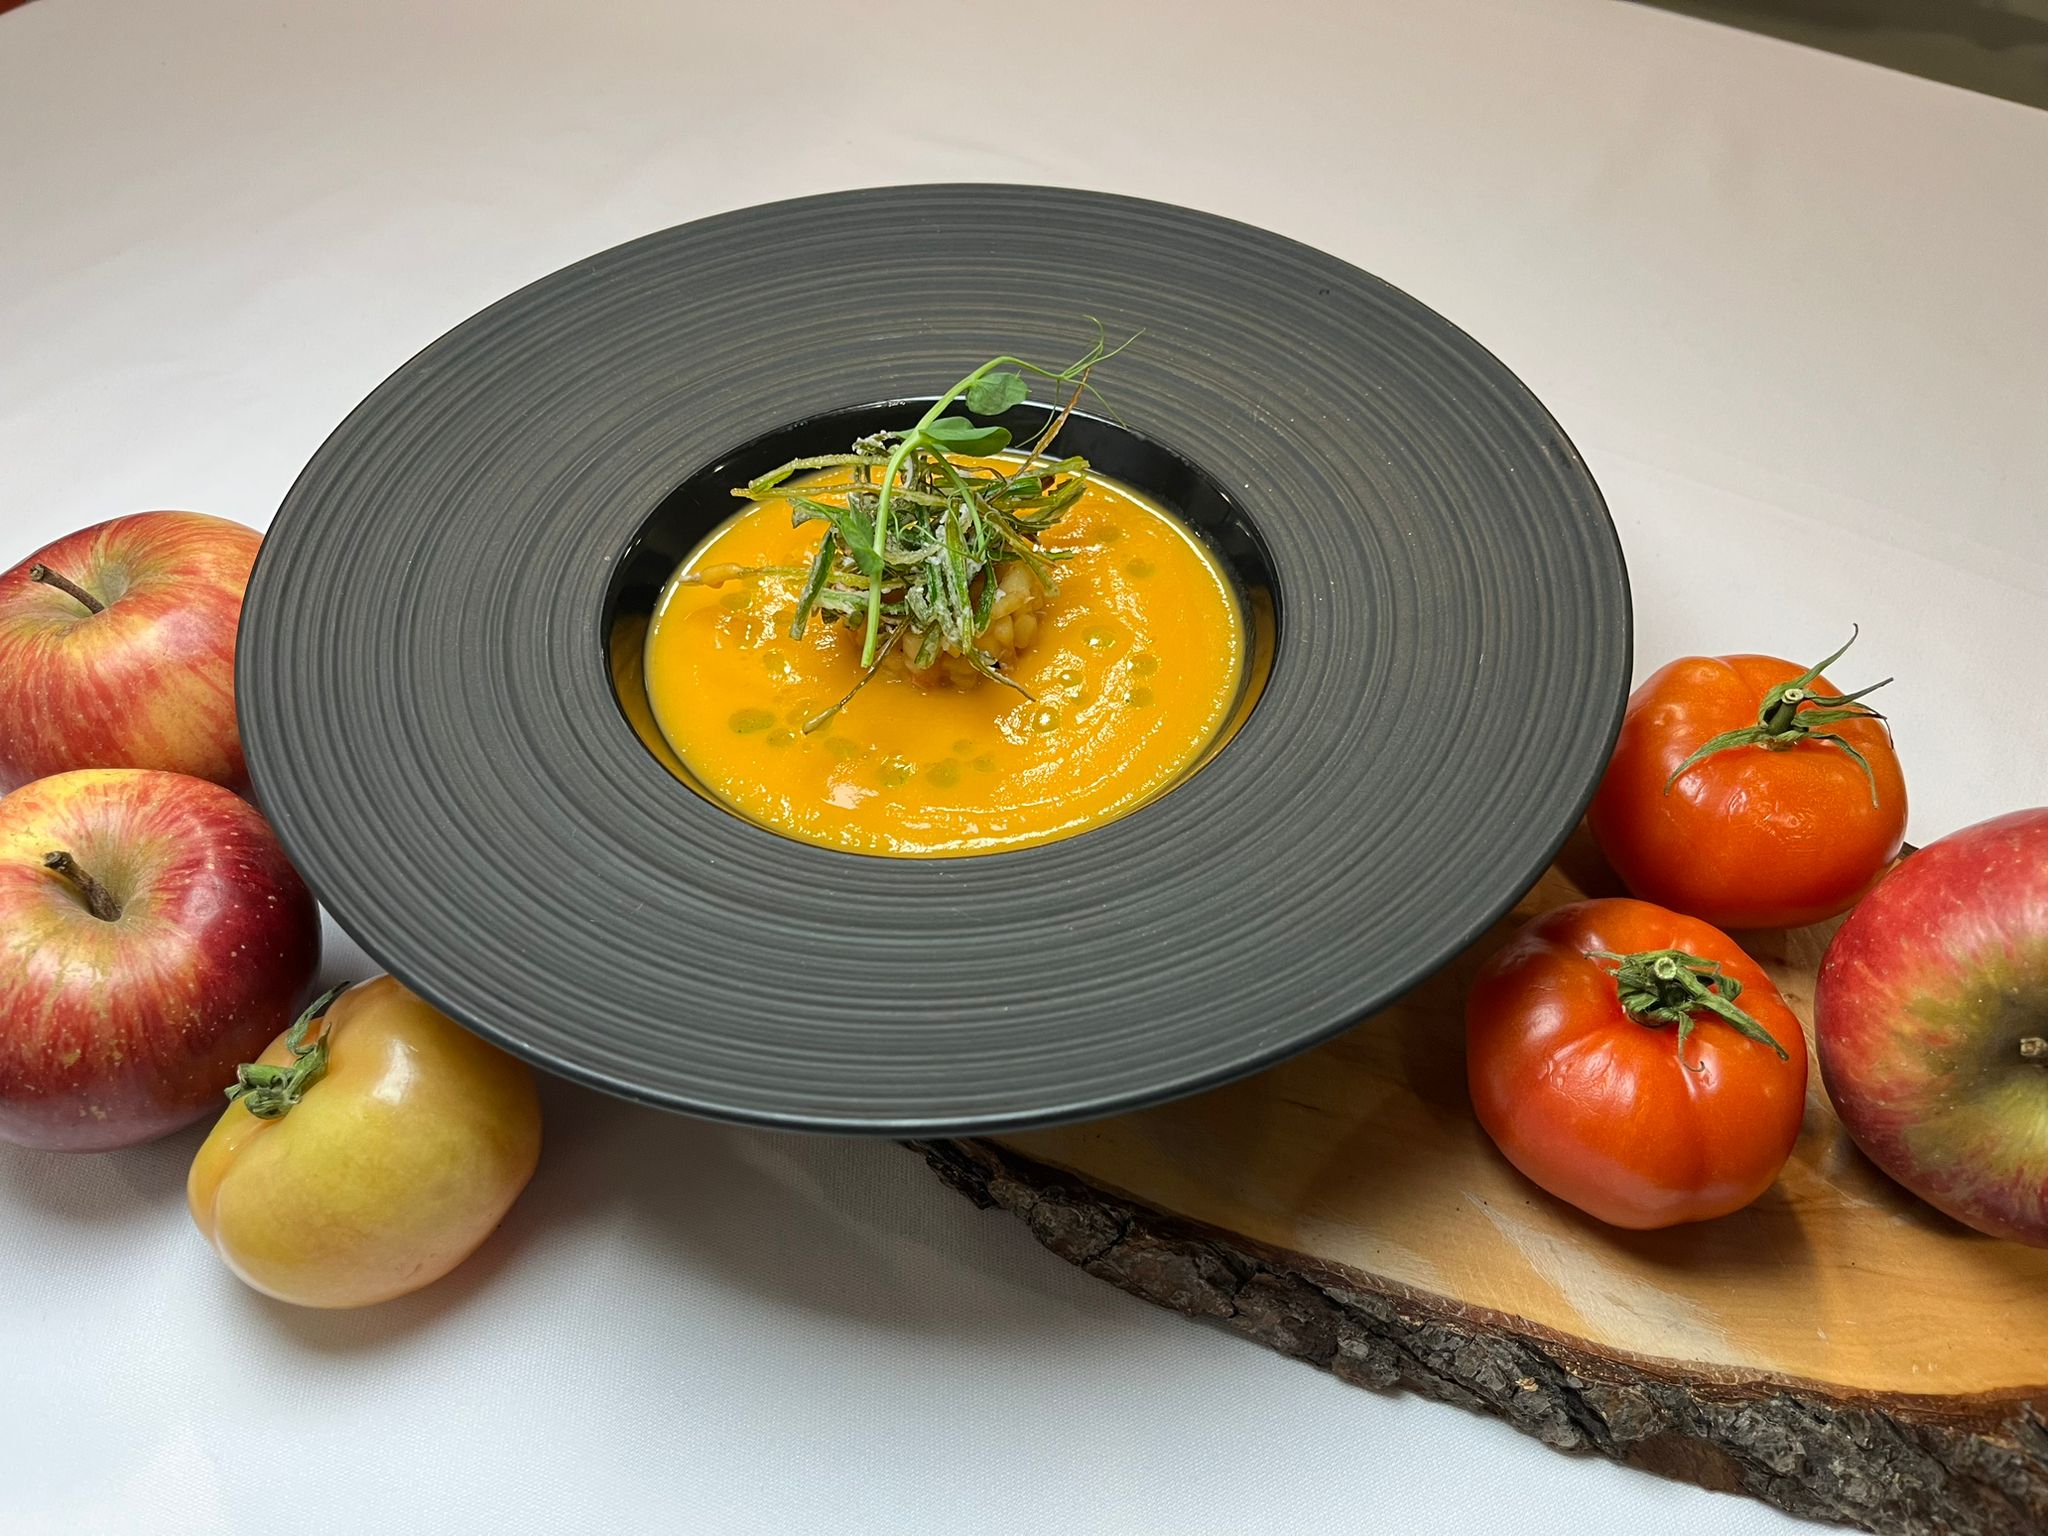 Sopa de Tomate e Maçã com Palha de Alho francês - I